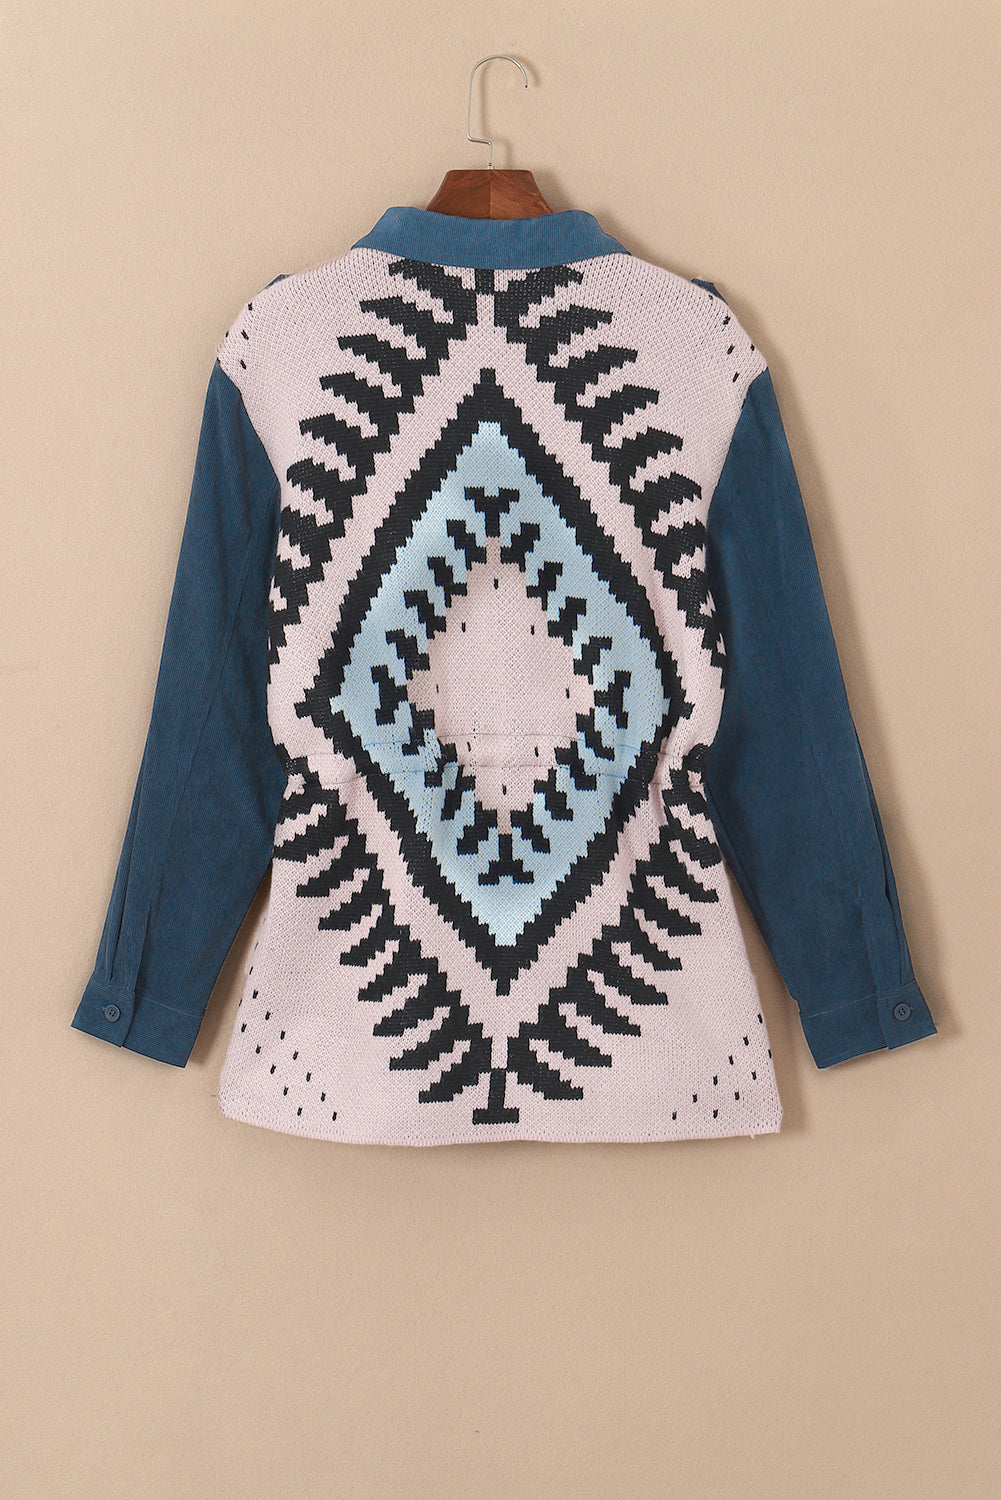 Blue Plus Size Corduroy Jacquard Knit Back Jacket - Bellisima Clothing Collective